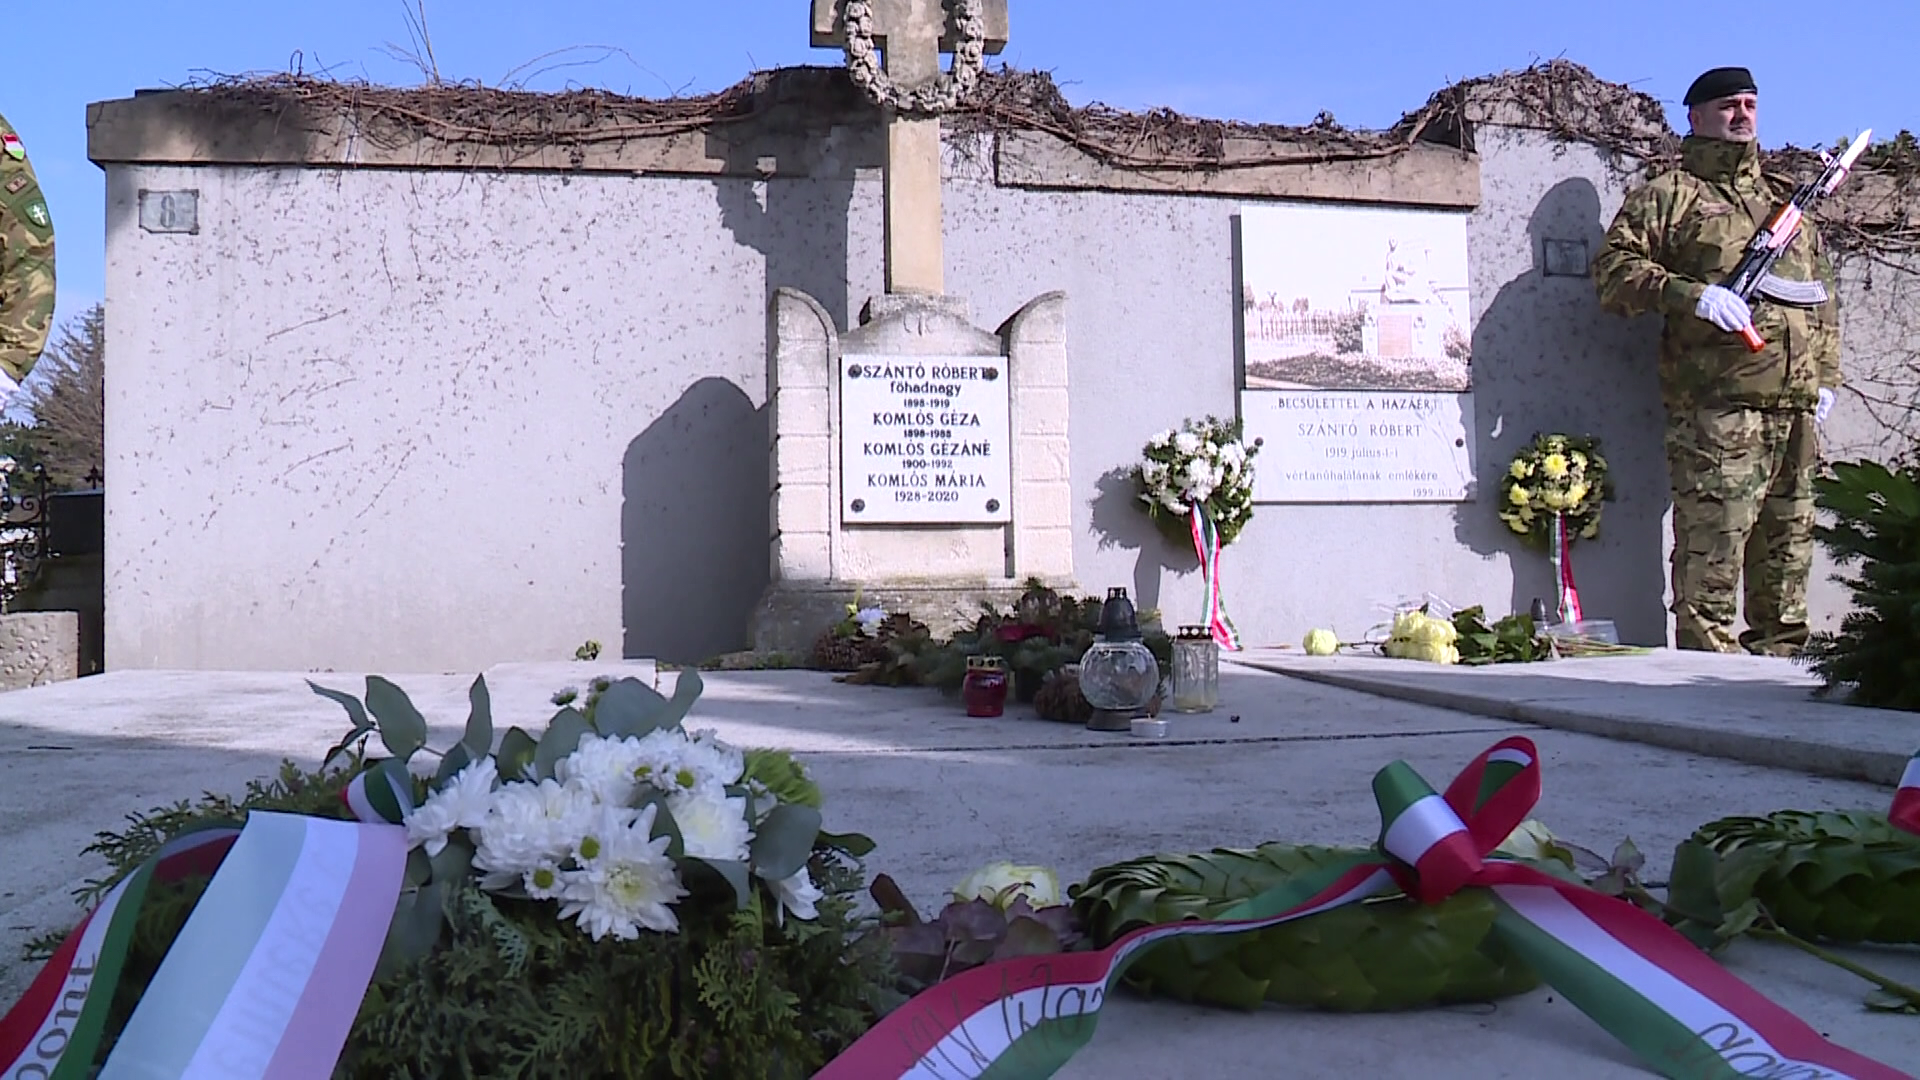 Sopronban Szántó Róbert vértanú bátorsága és hősiessége előtt tisztelegtek